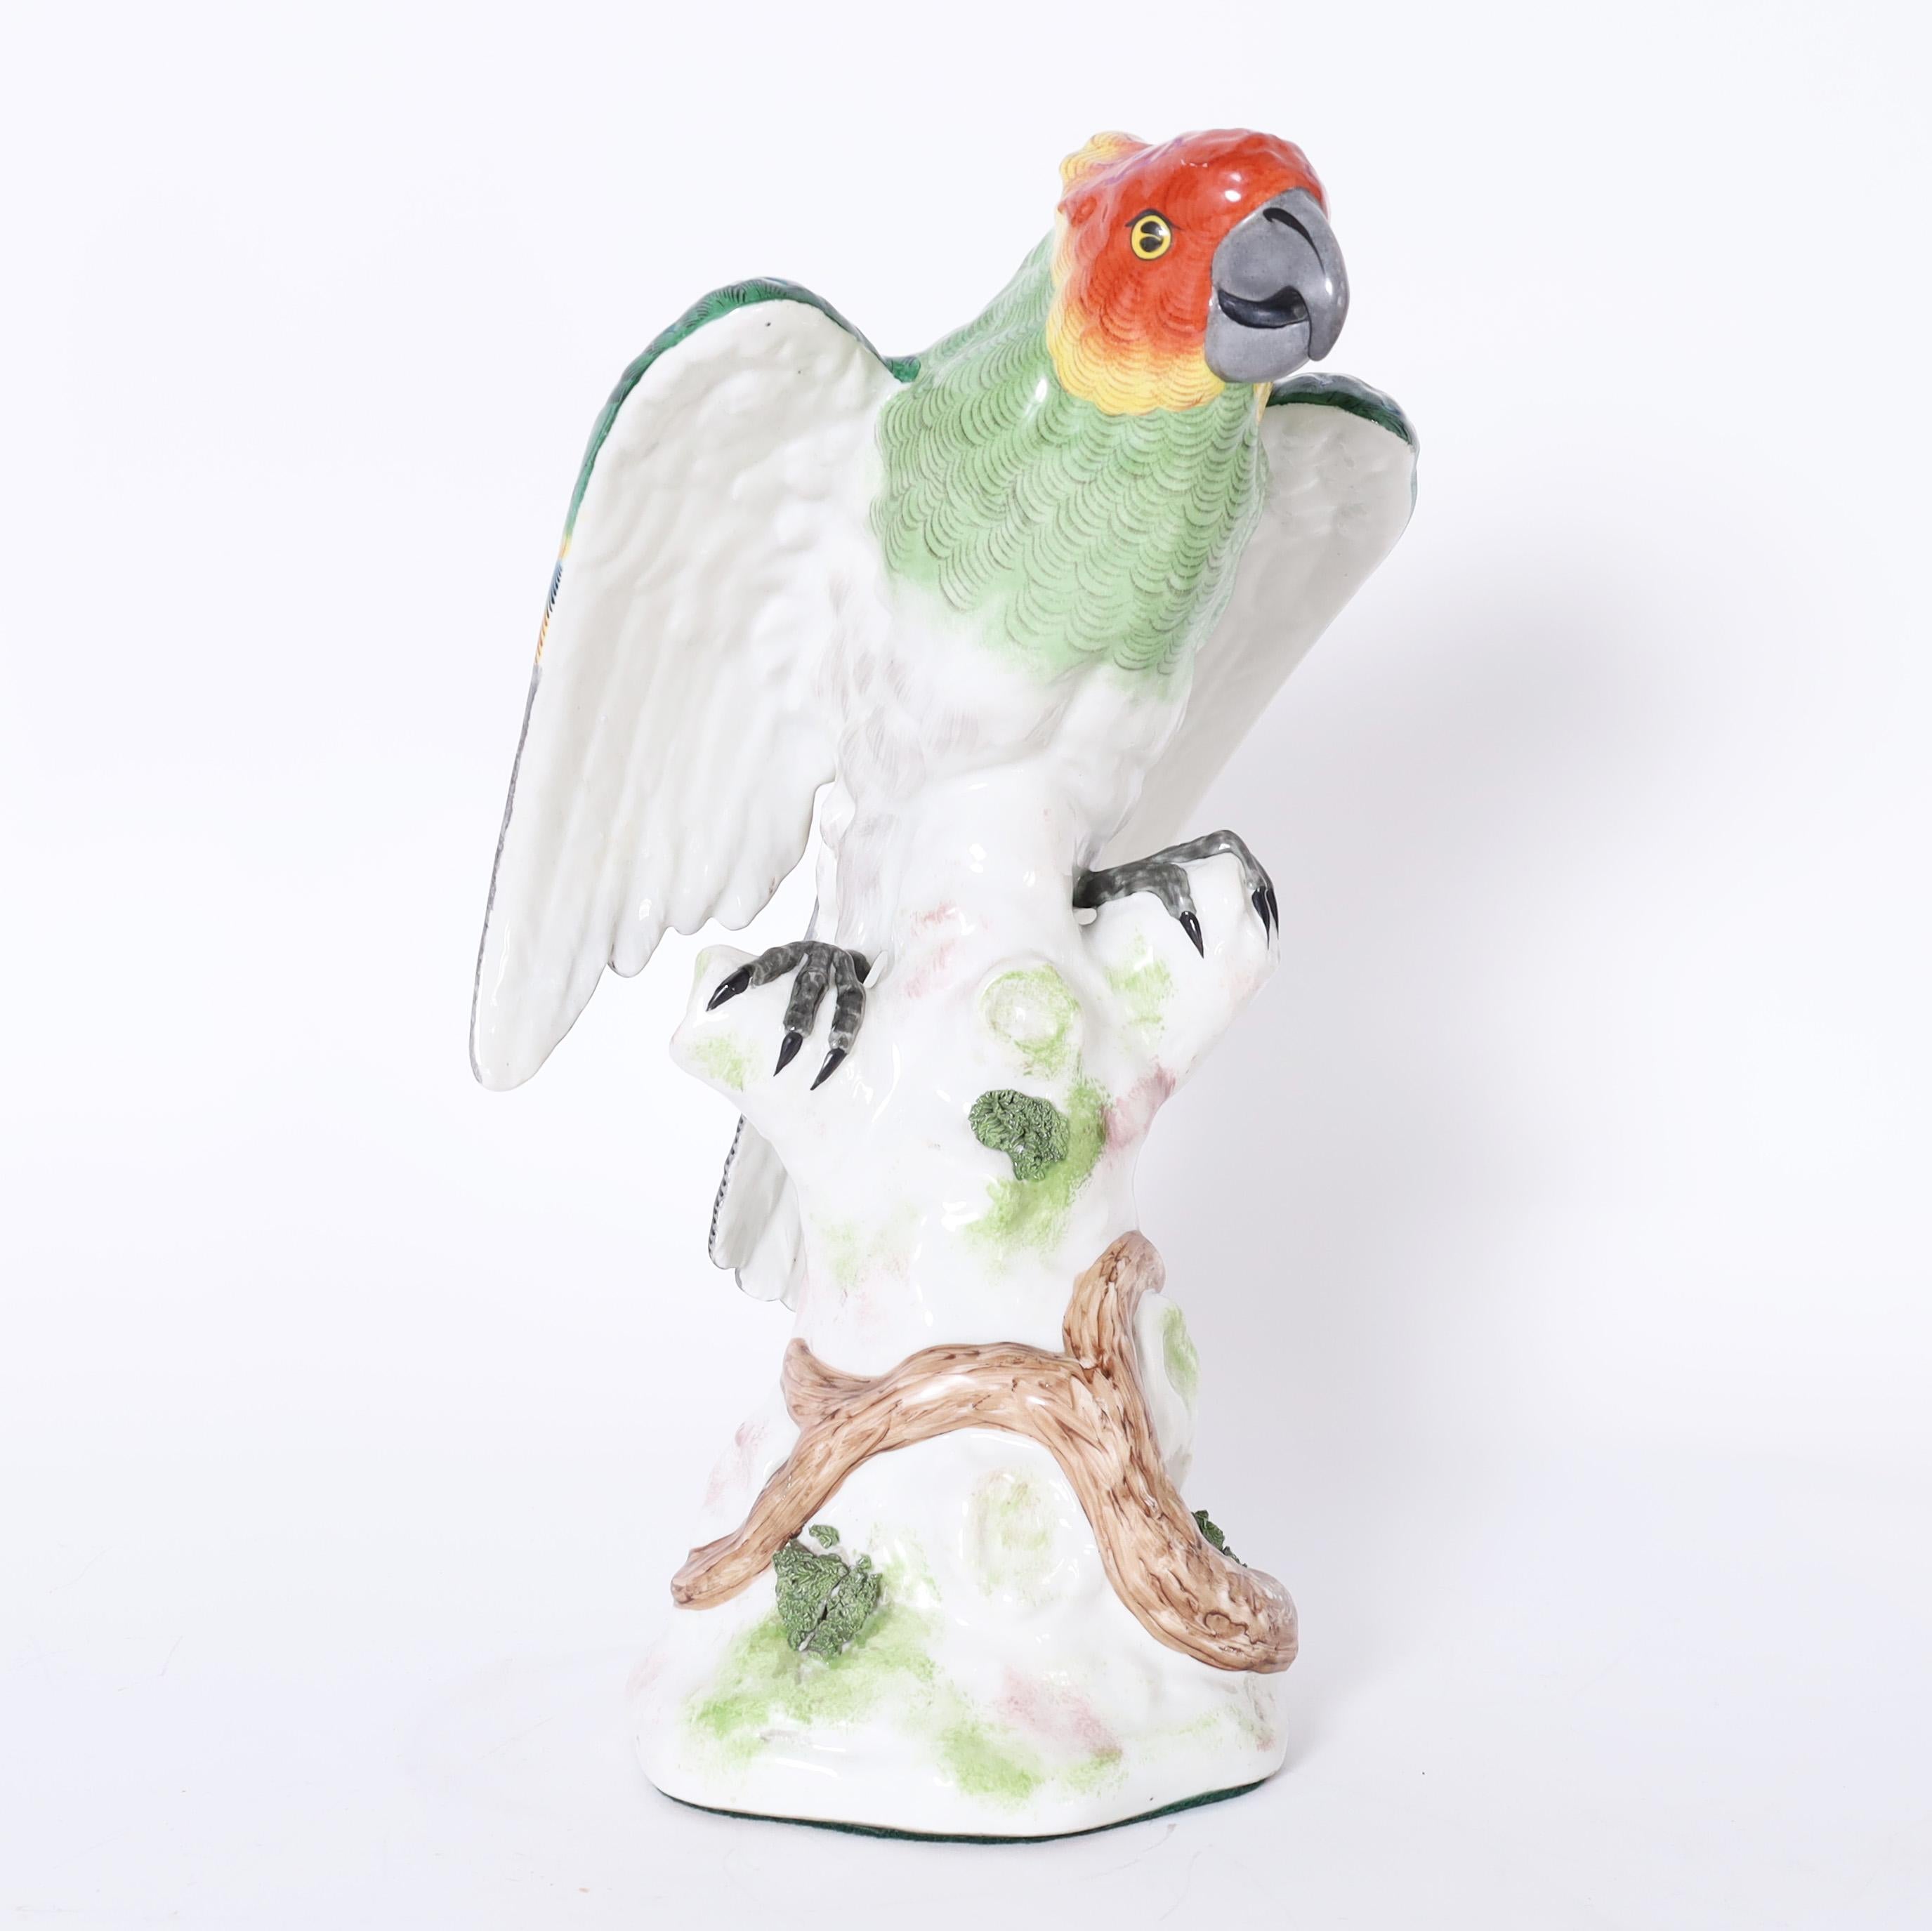 Charmant perroquet en porcelaine grandeur nature décoré à la main dans des couleurs tropicales vives, émaillé et perché sur un tronc d'arbre. Signé avec des flèches croisées au dos.